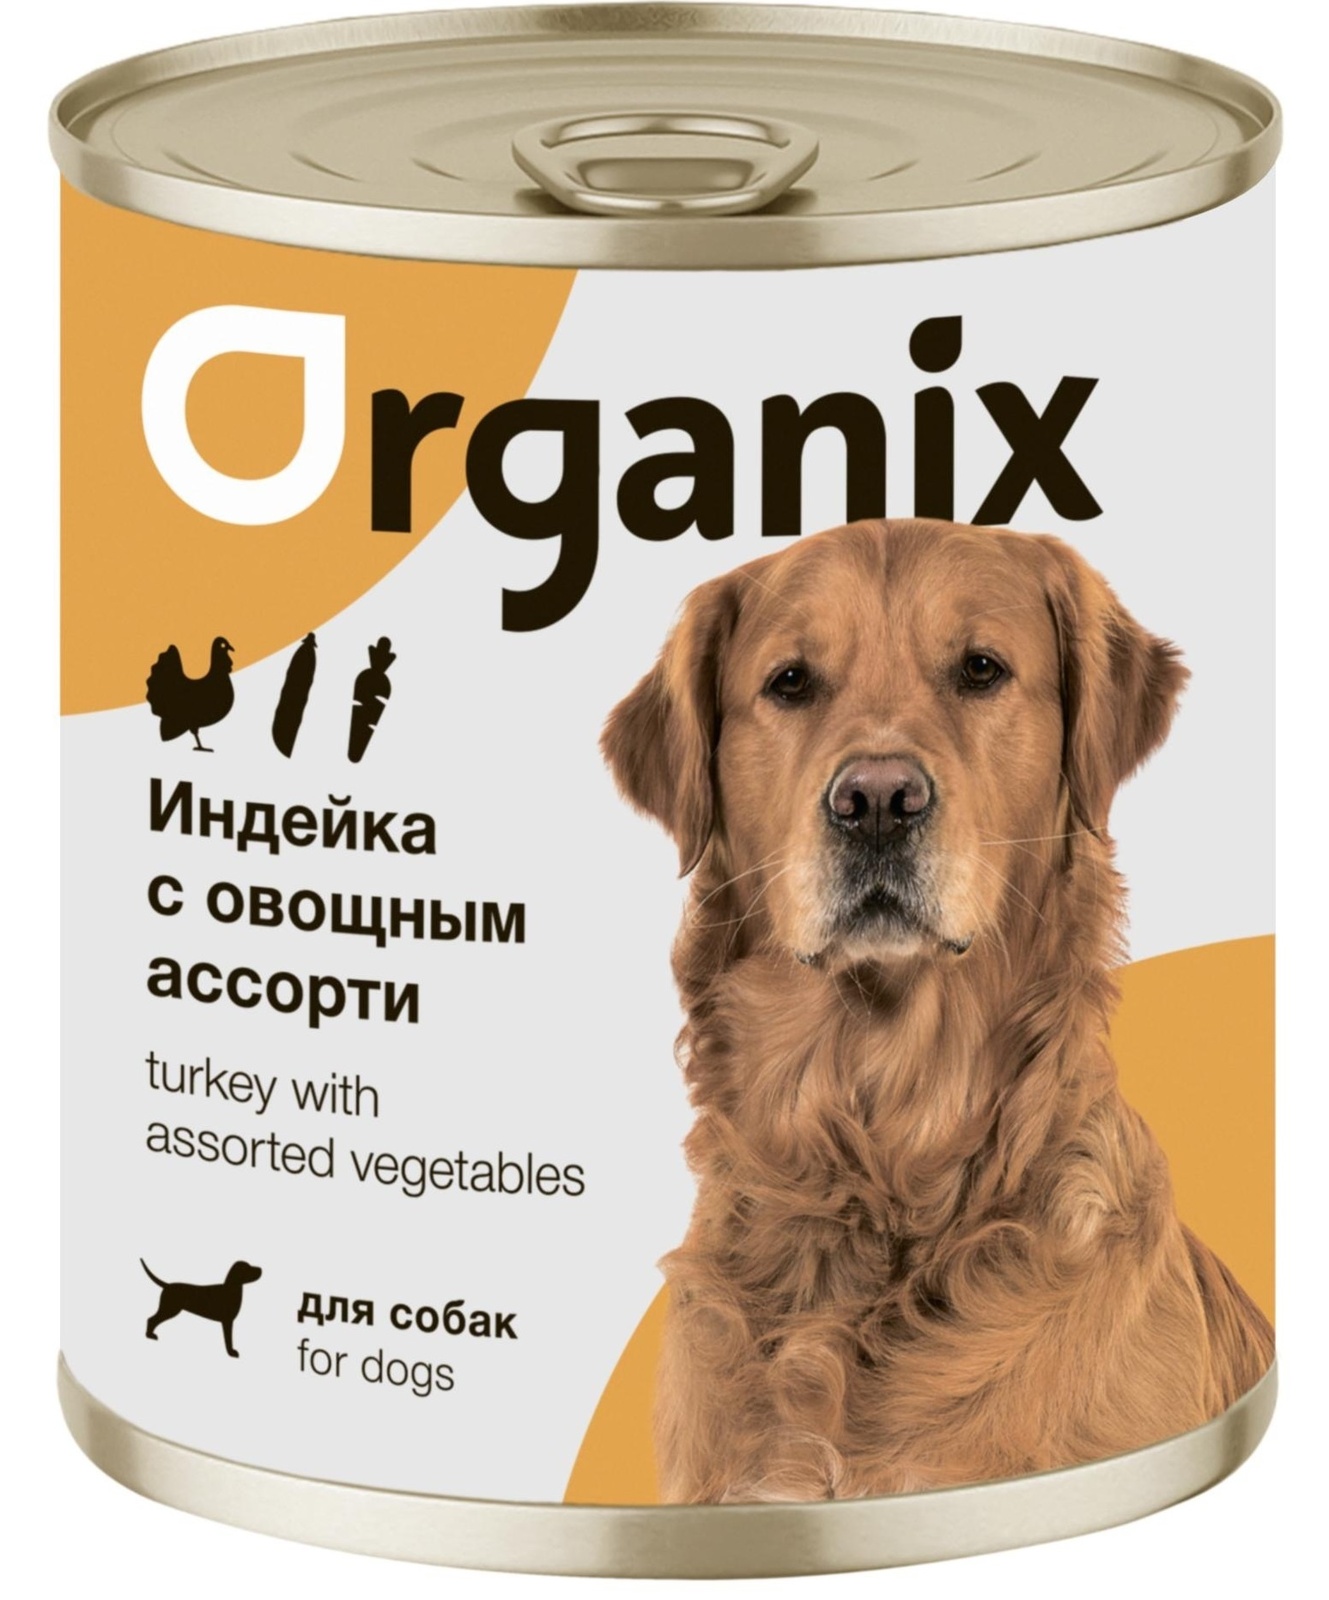 Organix консервы Organix консервы для собак Индейка с овощным ассорти (750 г) 42918